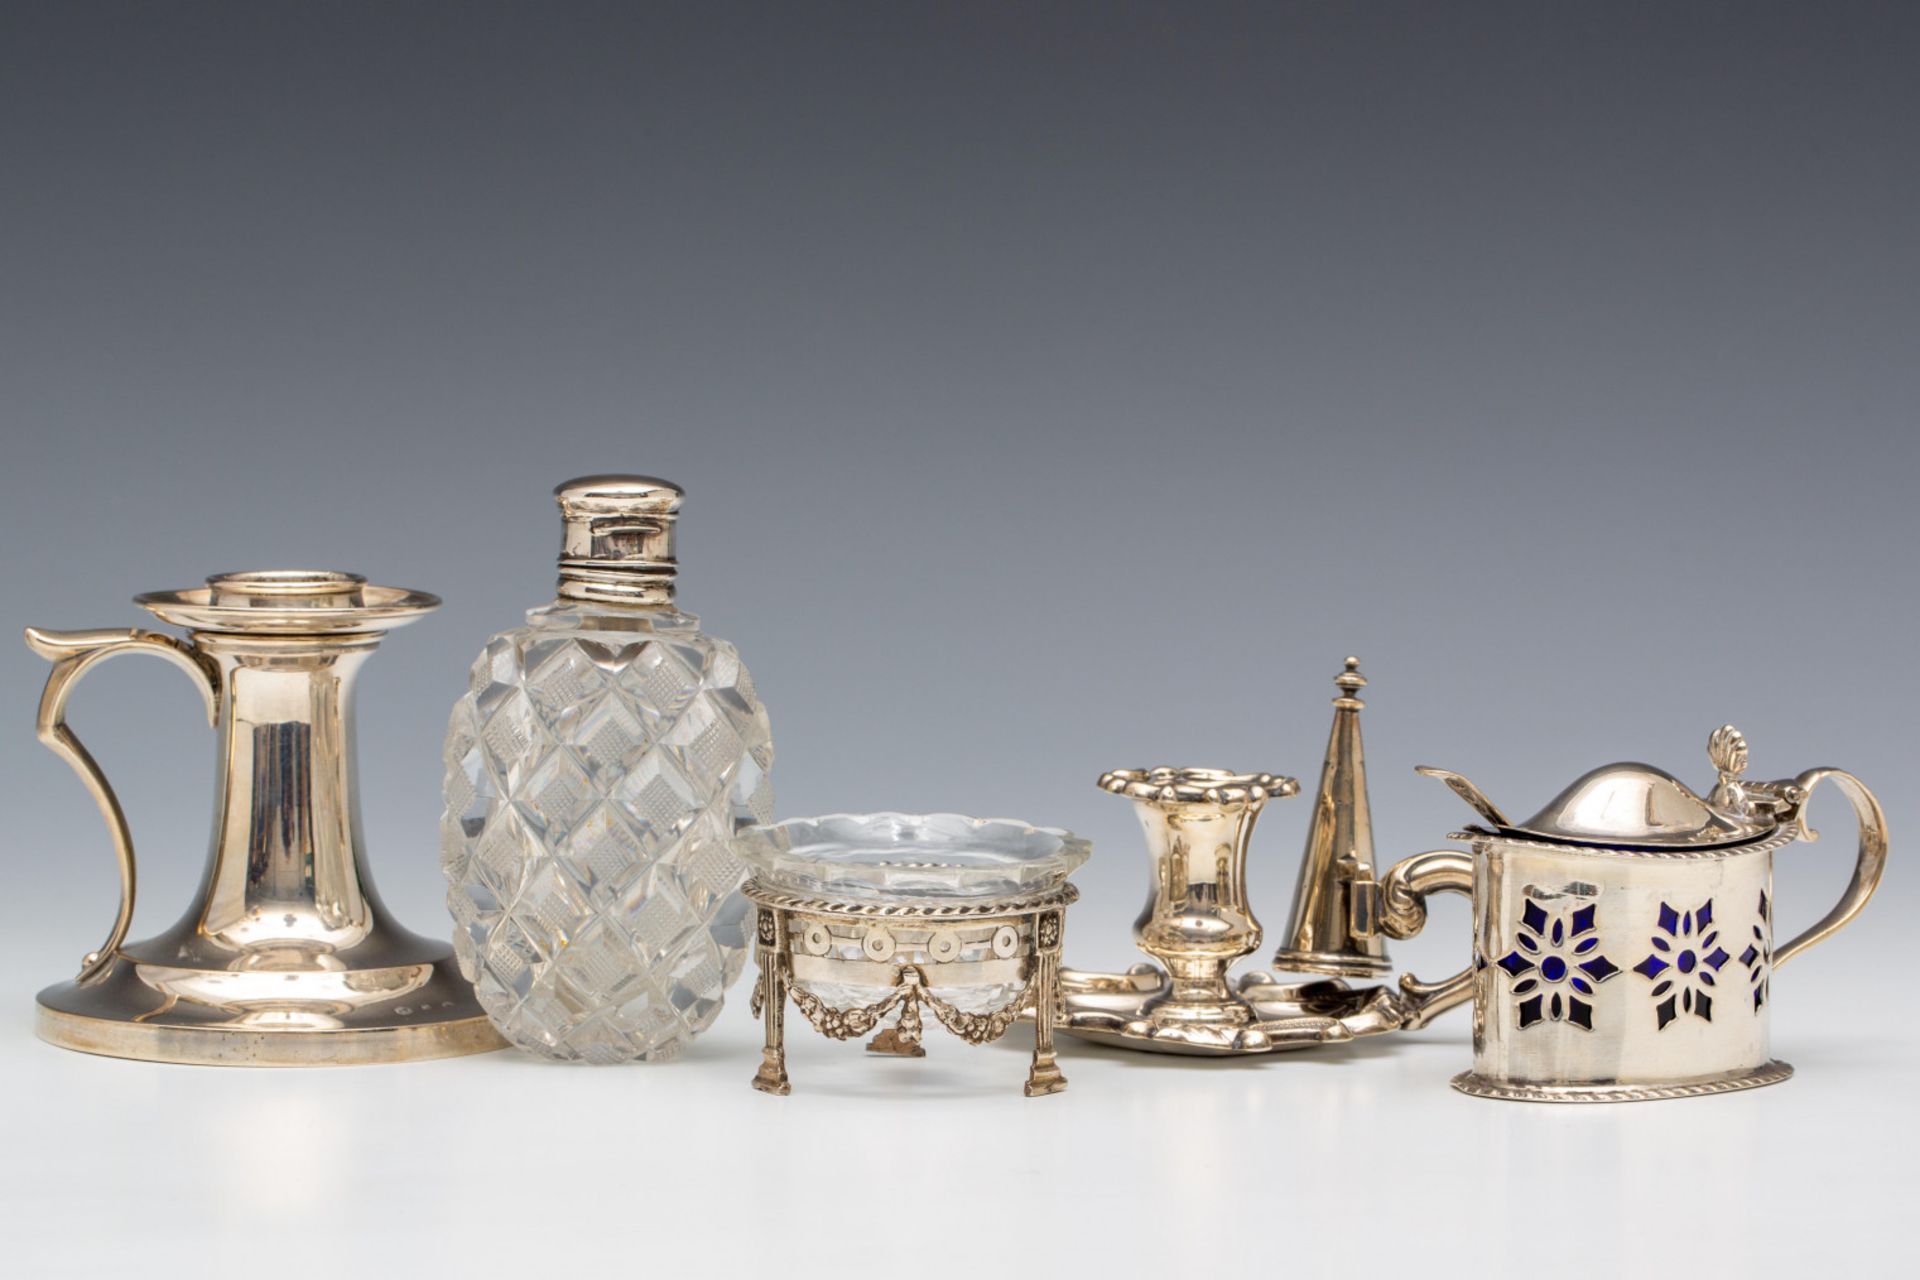 Engeland, blaker en mosterdpotje, Nederland, blaker zoutvaatje en kristallen zakflacon, 19e eeuw,